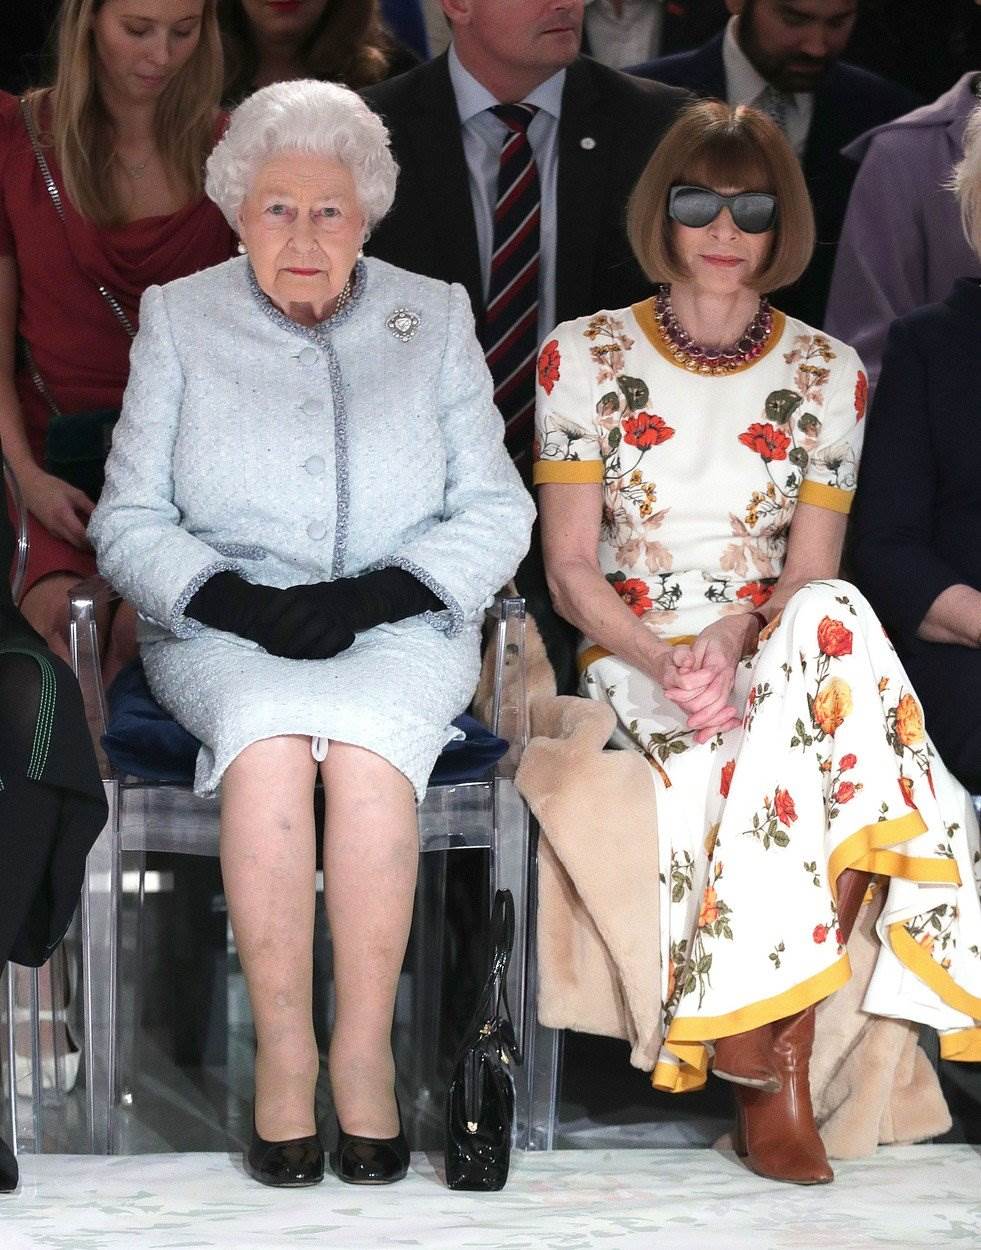 NIKAD NIJE KASNO Kraljica u 92. godini prvi put na tjednu mode